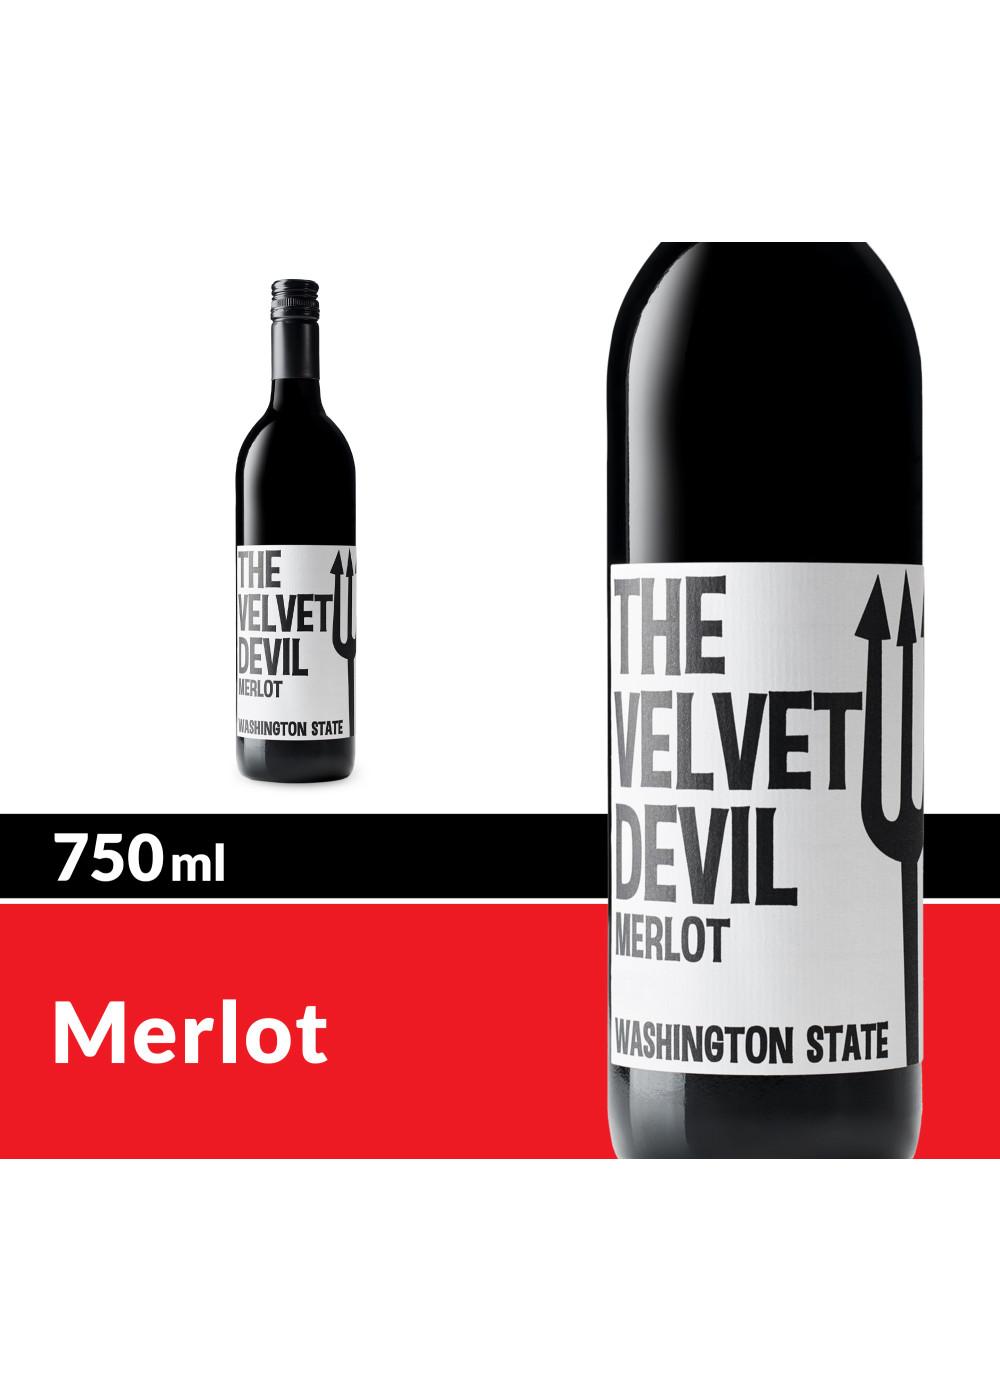 The Velvet Devil Merlot Red Wine; image 6 of 7